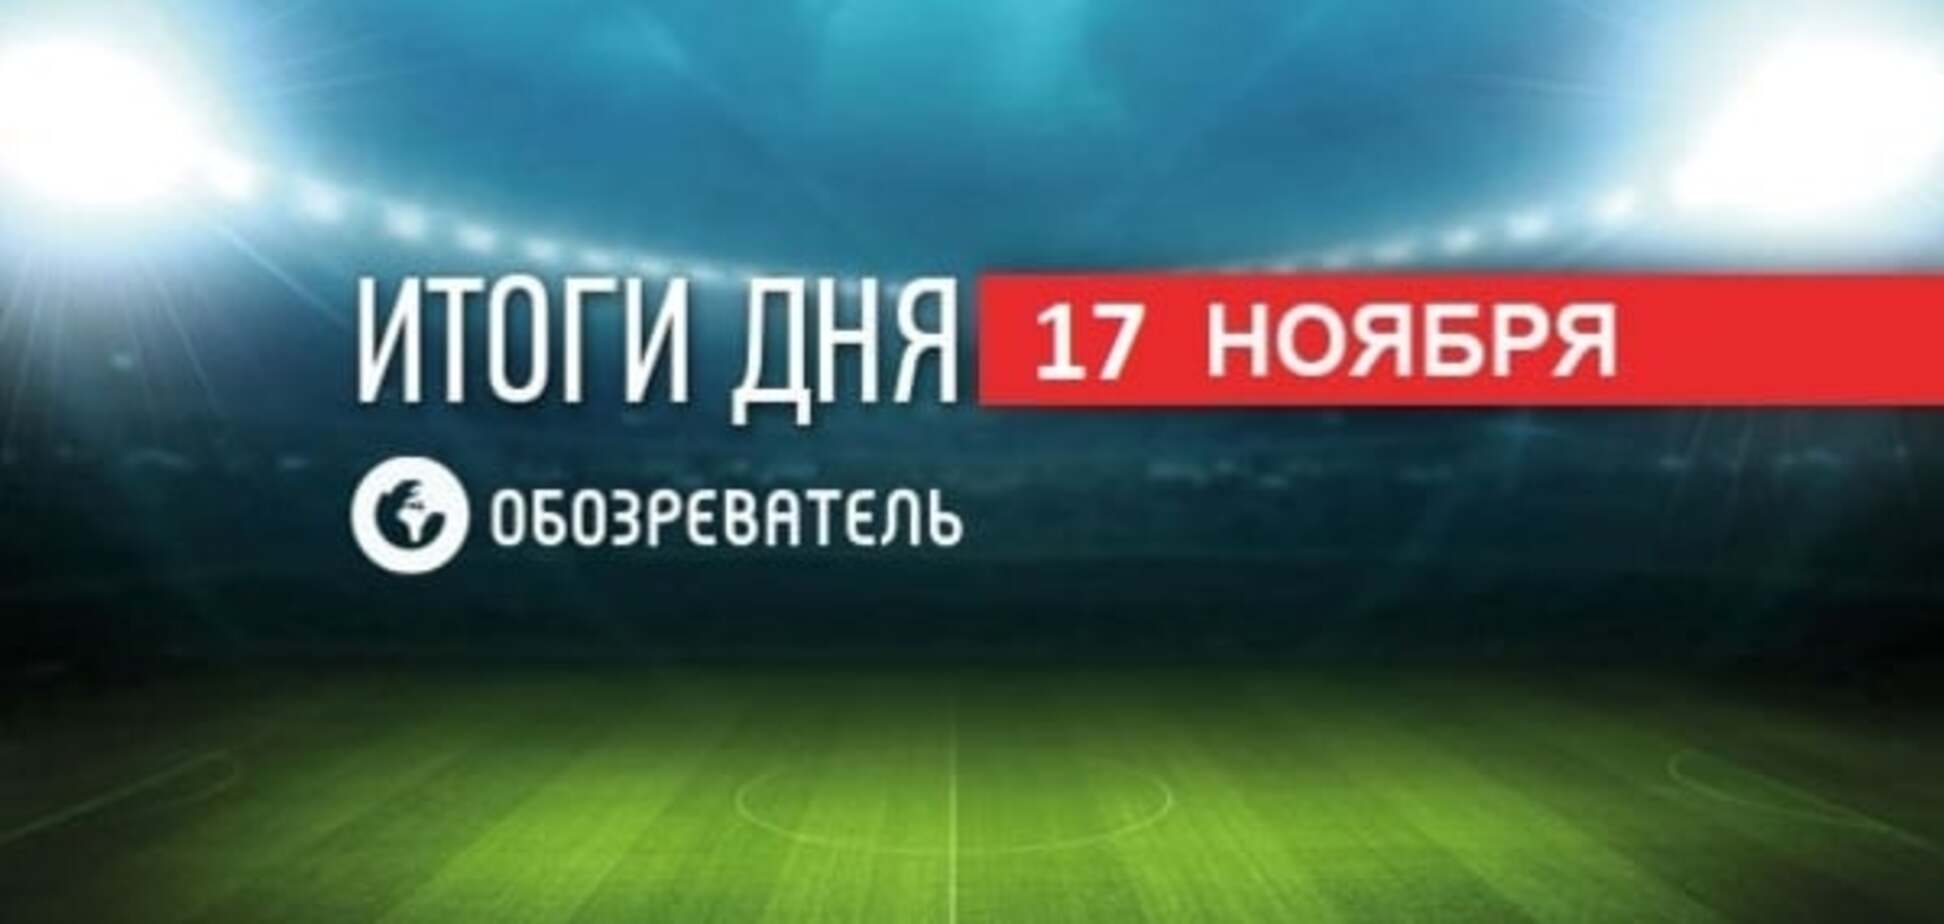 Украина вышла на Евро, Милевский решил бросить футбол. Спортивные итоги 17 ноября